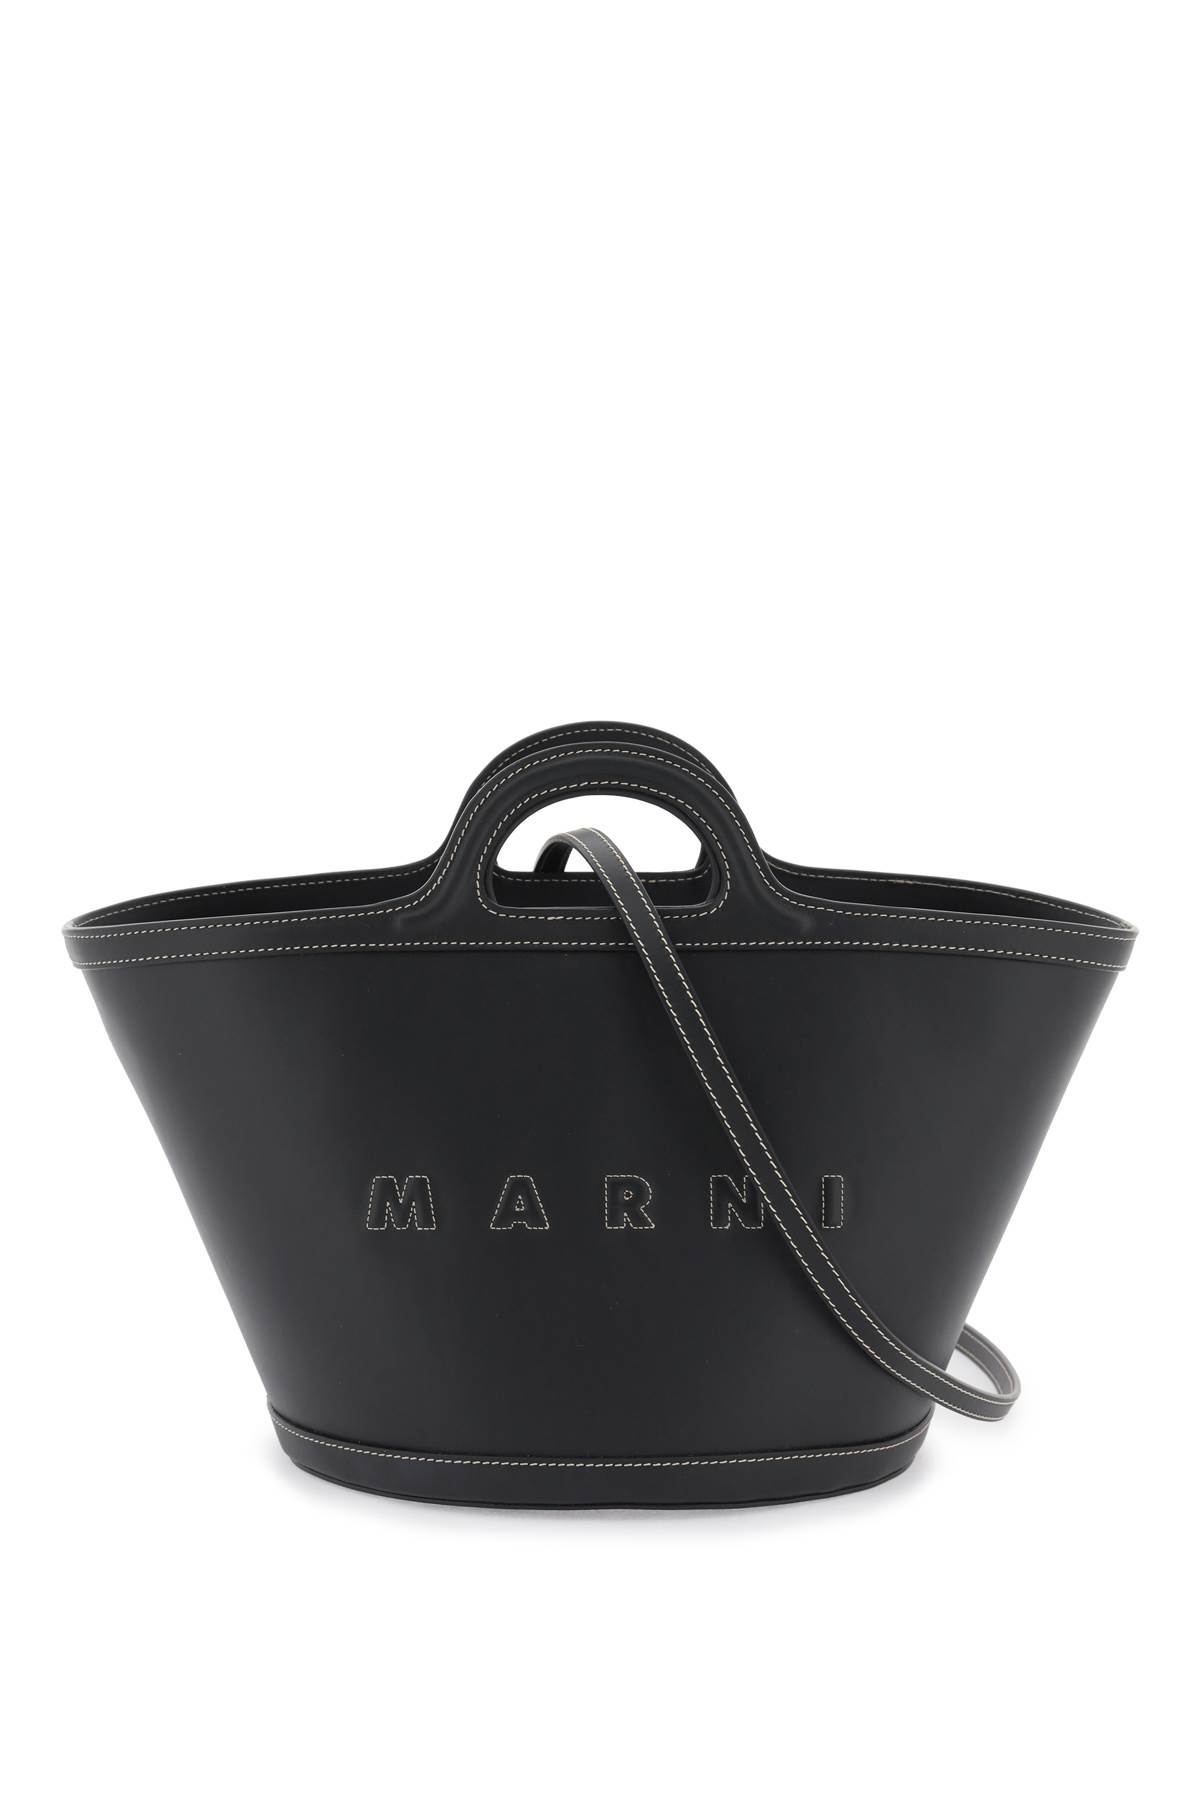 Marni Leather Small Tropicalia Bucket Bag